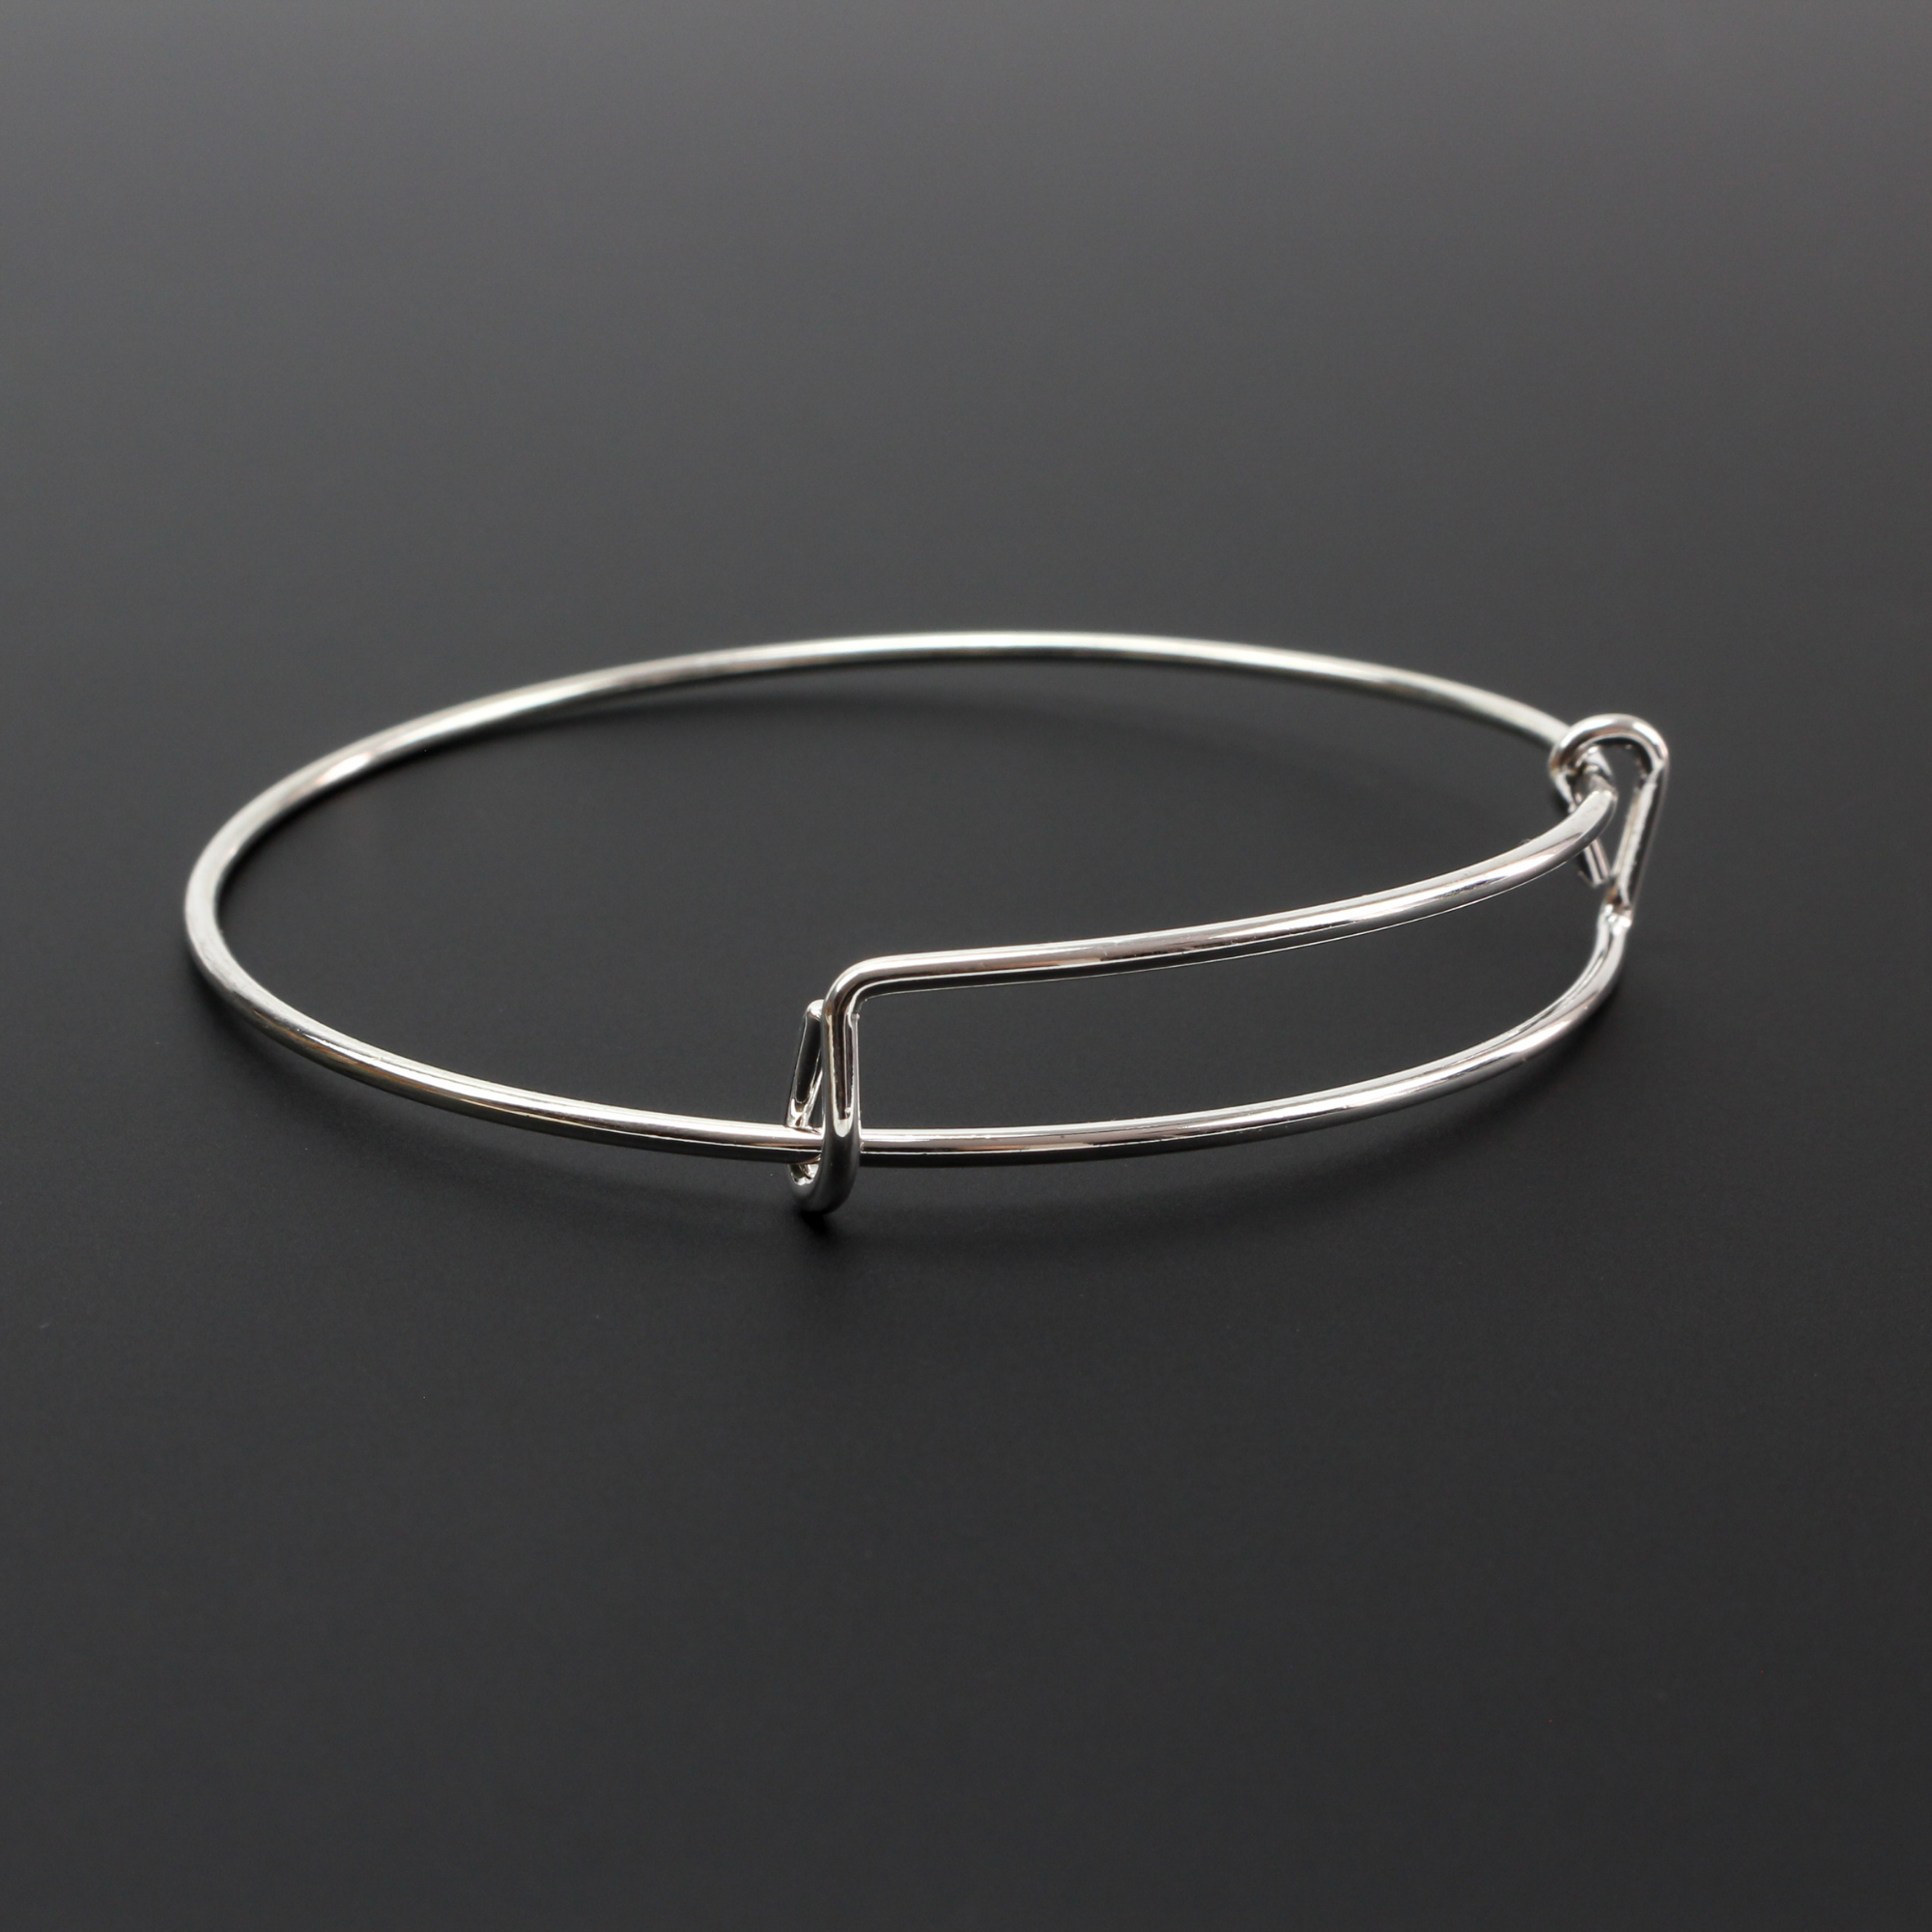 exapandable iron bangle bracelet size medium adult 65mm